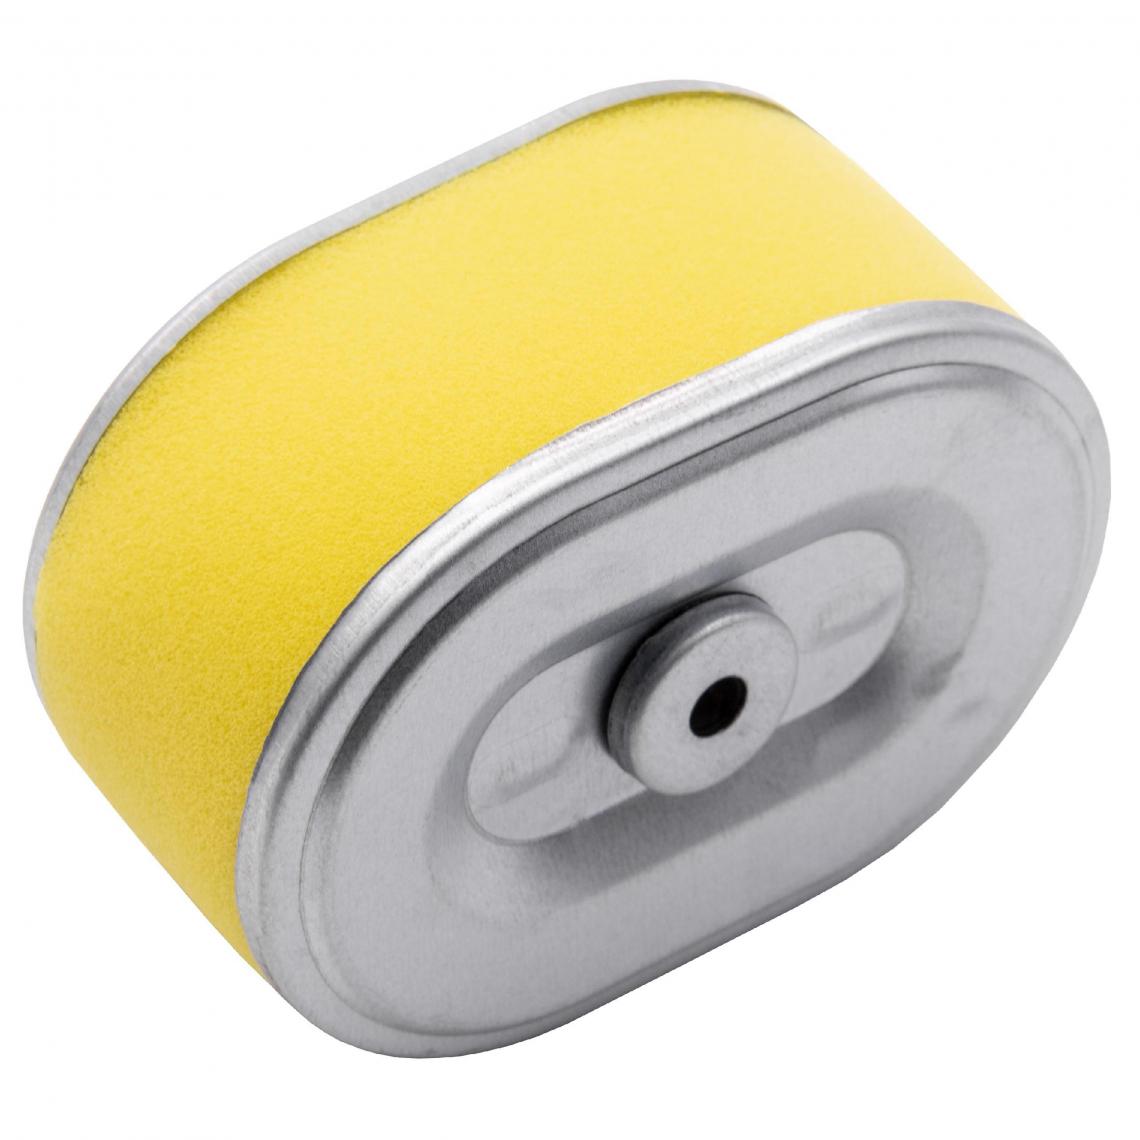 Vhbw - vhbw Filtre à air avec préfiltre de rechange jaune, argent compatible avec John Deere 260C, 260SL tondeuse à gazon; 10,1 x 7,2 x 5,1cm - Accessoires tondeuses